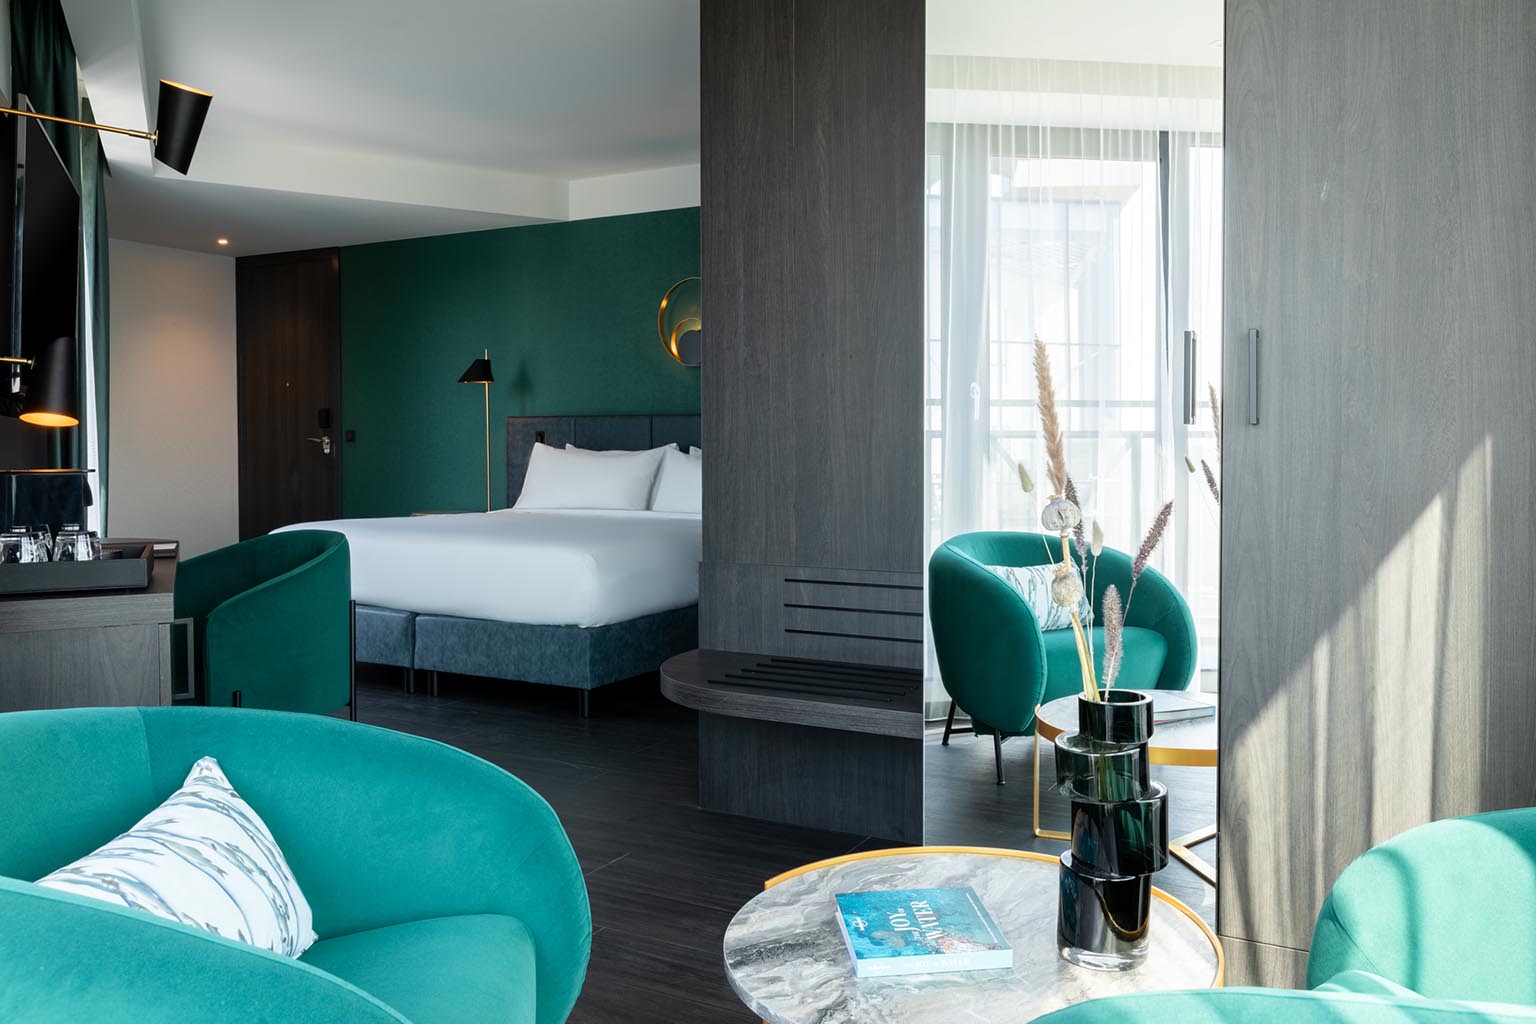 Hotel The Den | Portfolio hotel in Den Bosch | Binnenkijken boutique hotel | Stek Magazine